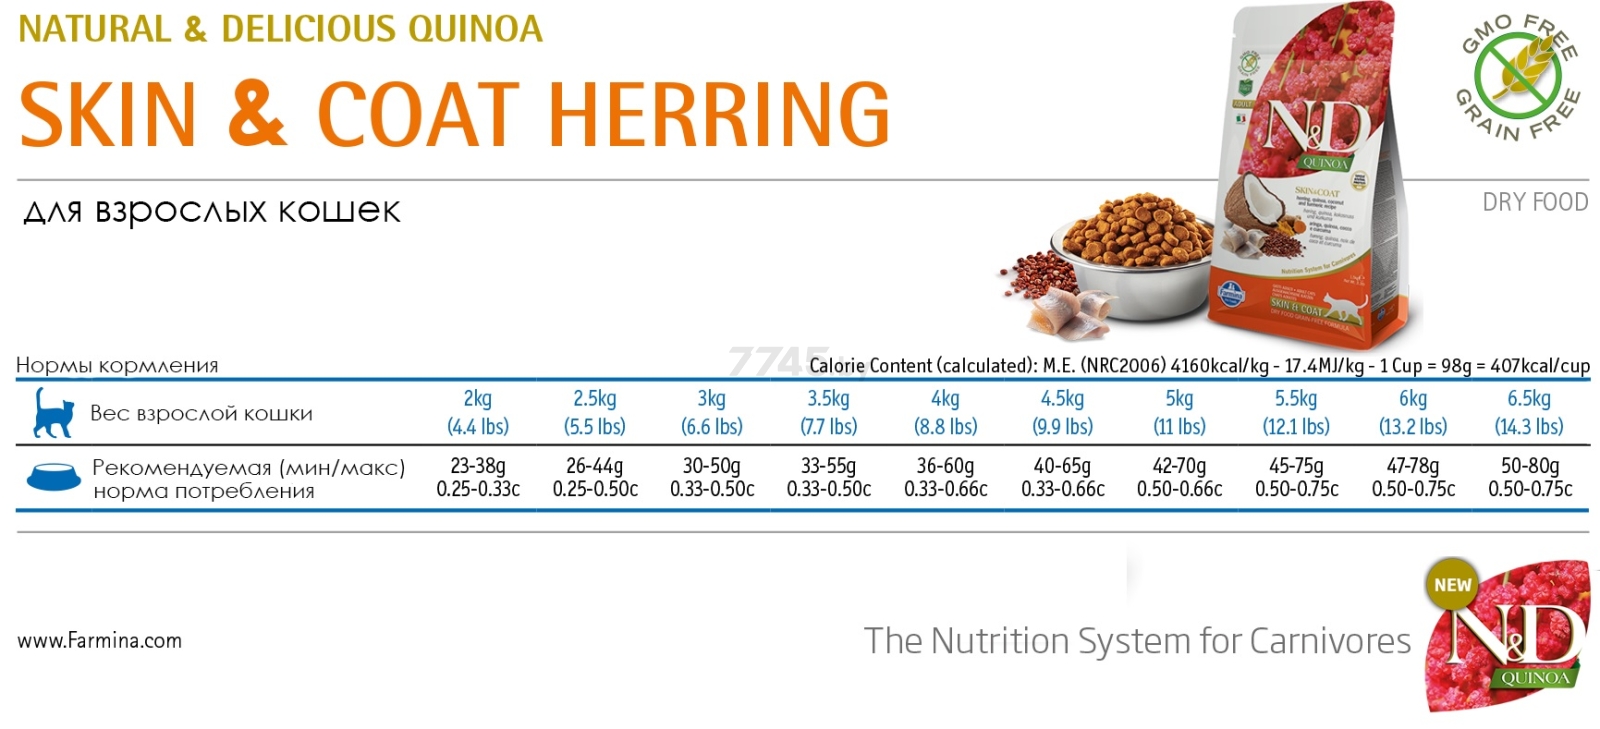 Сухой корм для кошек беззерновой FARMINA N&D Quinoa Skin & Coat Adult сельдь с кокосом 1,5 кг (8010276035813) - Фото 2